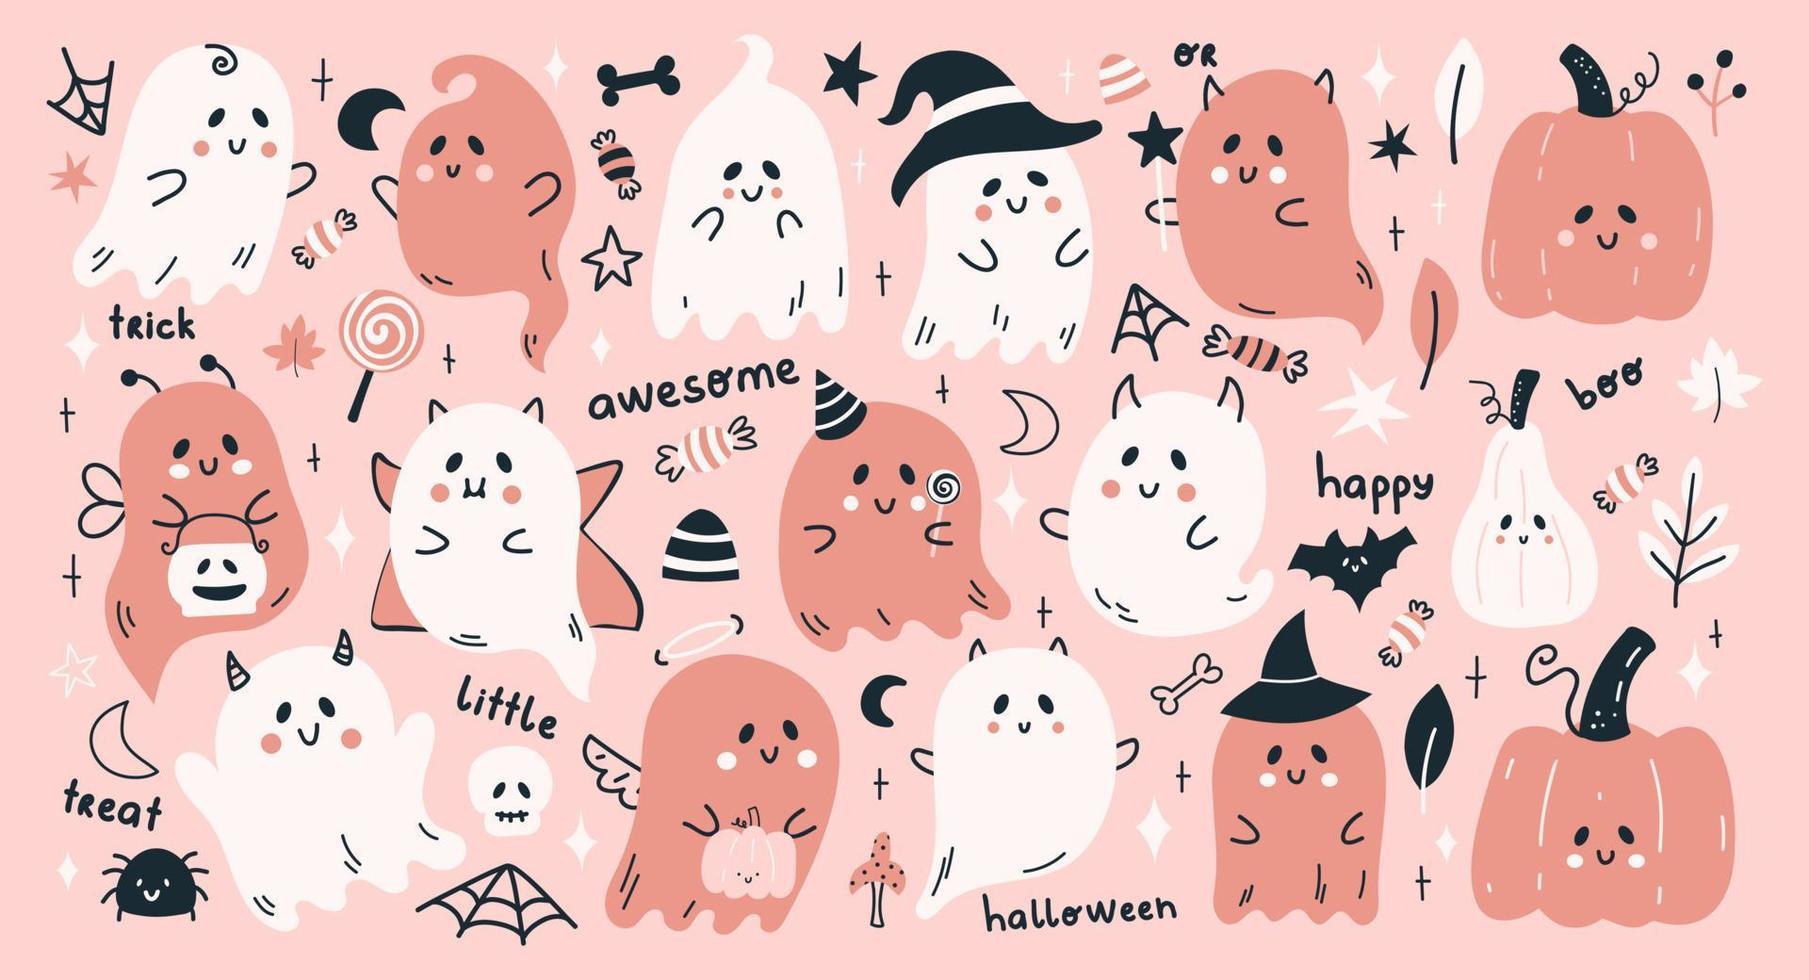 lindo patrón de conjunto de vectores de halloween con fantasmas de dibujos animados, calabazas y más elementos divertidos. citas de letras de halloween dibujadas a mano.